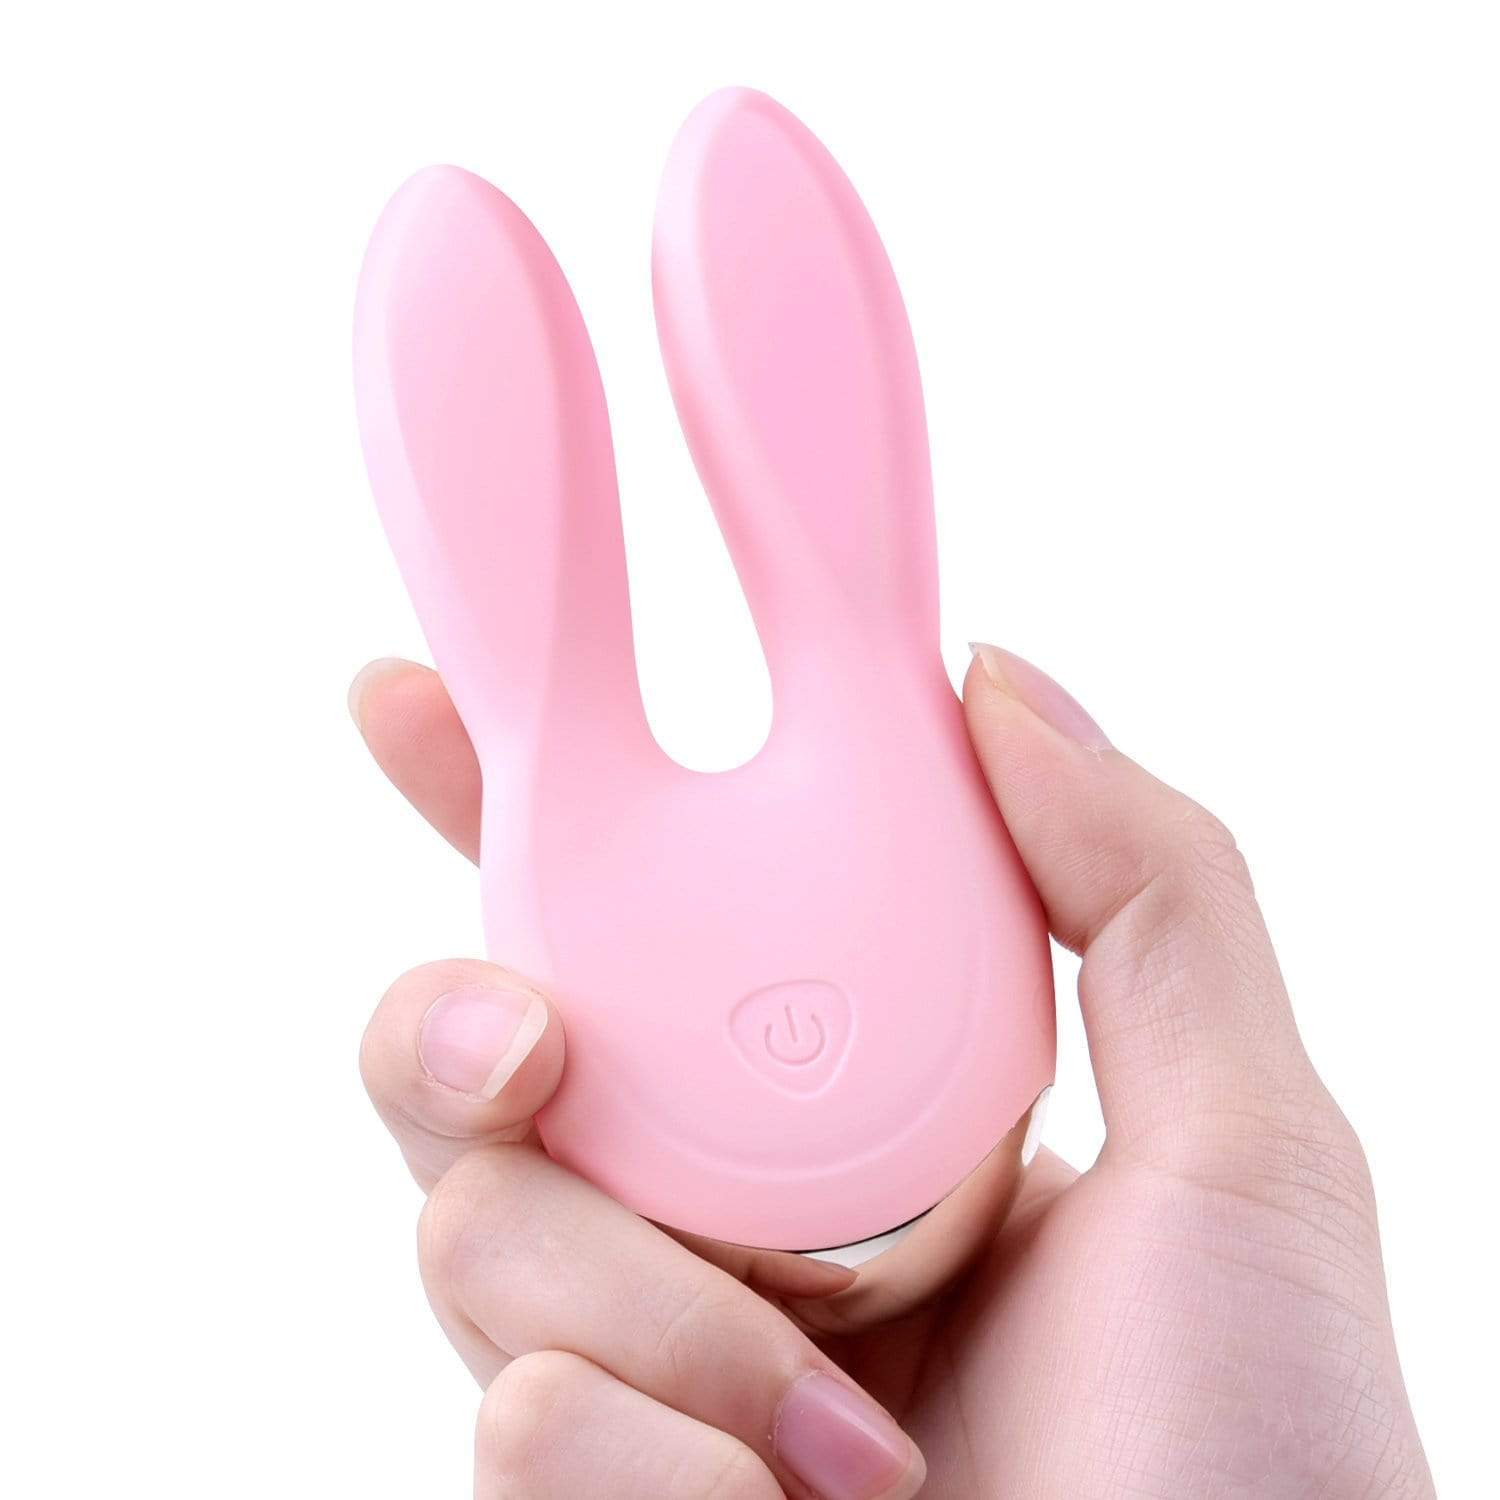 Erocome - Gemini Clit Massager (Pink) -  Clit Massager (Vibration) Rechargeable  Durio.sg